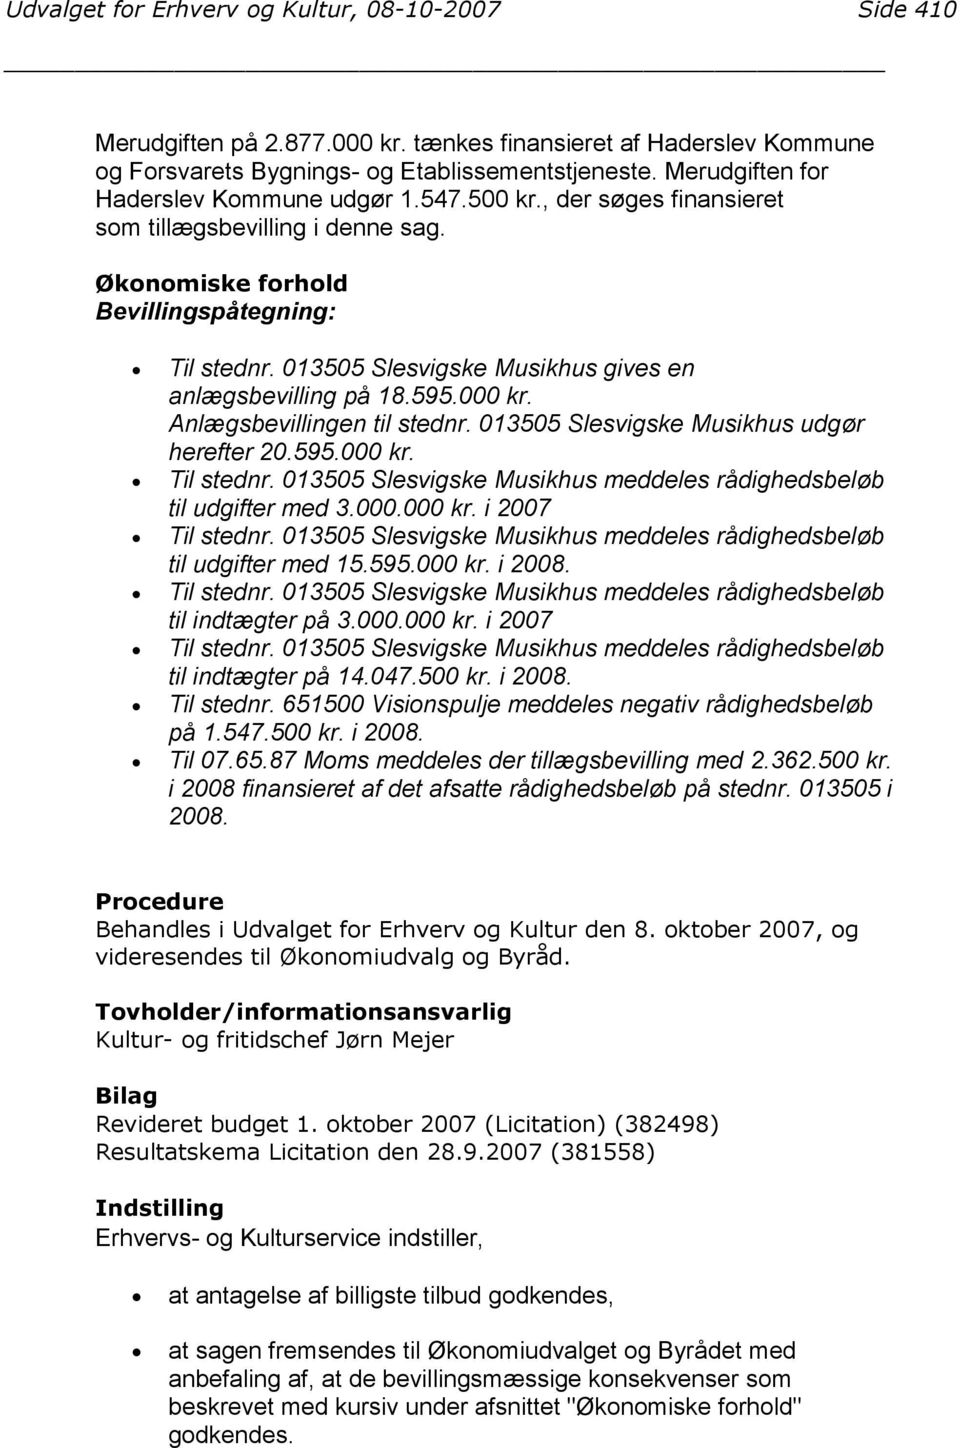 013505 Slesvigske Musikhus gives en anlægsbevilling på 18.595.000 kr. Anlægsbevillingen til stednr. 013505 Slesvigske Musikhus udgør herefter 20.595.000 kr. Til stednr.